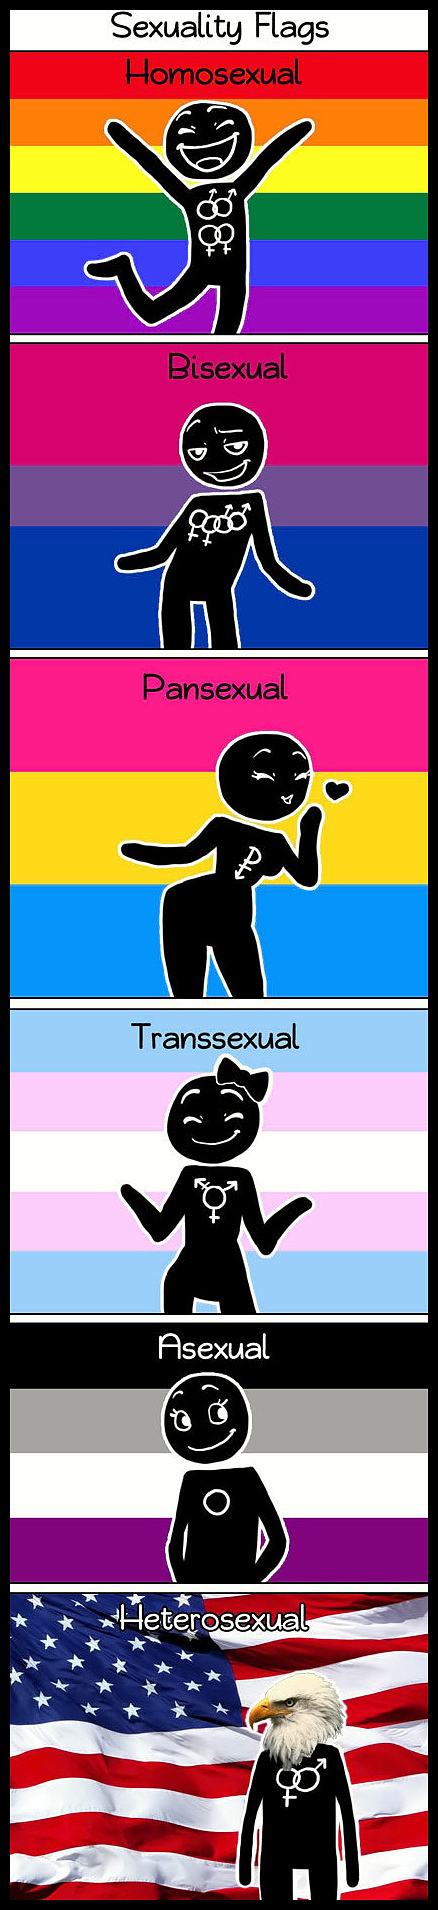 Obrázek - Sexuality flags -      19.03.2013